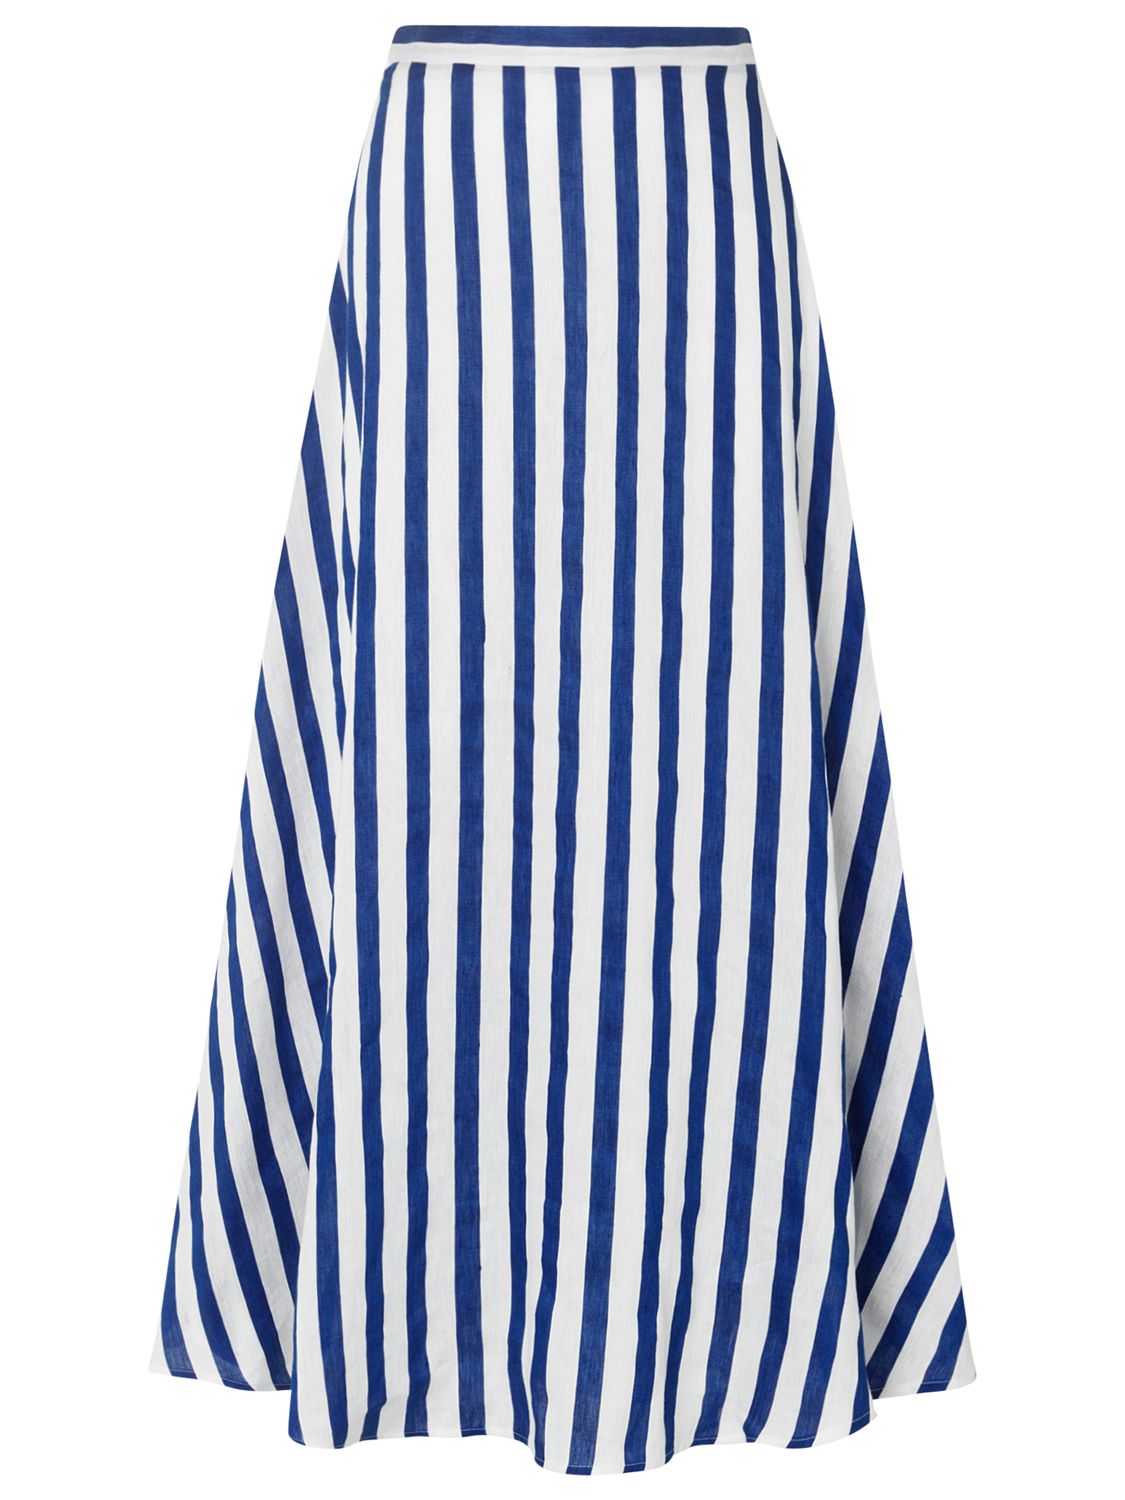 L.K. Bennett Harpa Stripe Skirt, Blue/White at John Lewis & Partners